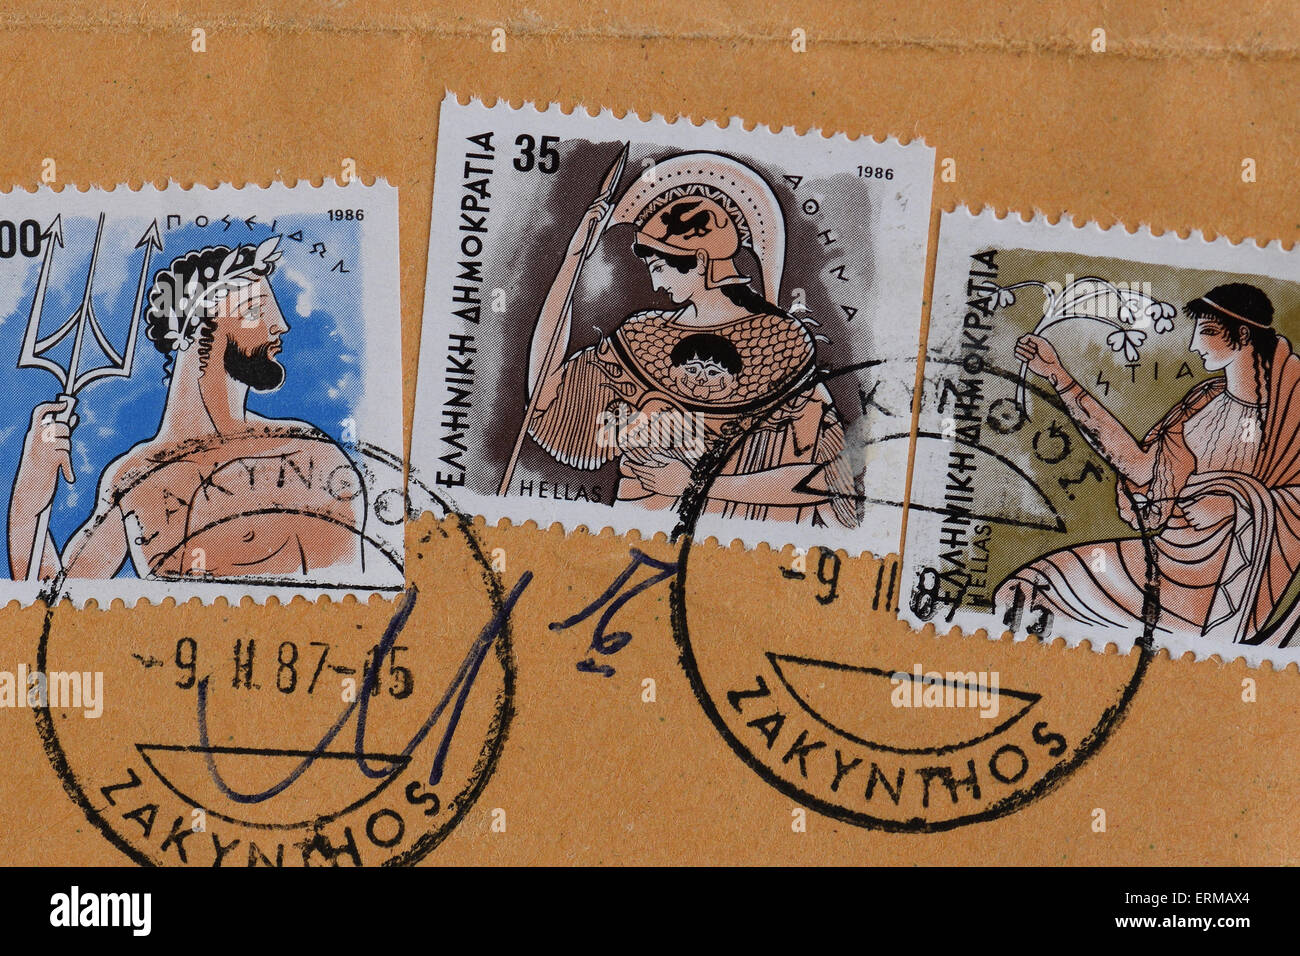 Les timbres vintage avec les dieux grecs, Poséidon et Athéna Hestia. Banque D'Images